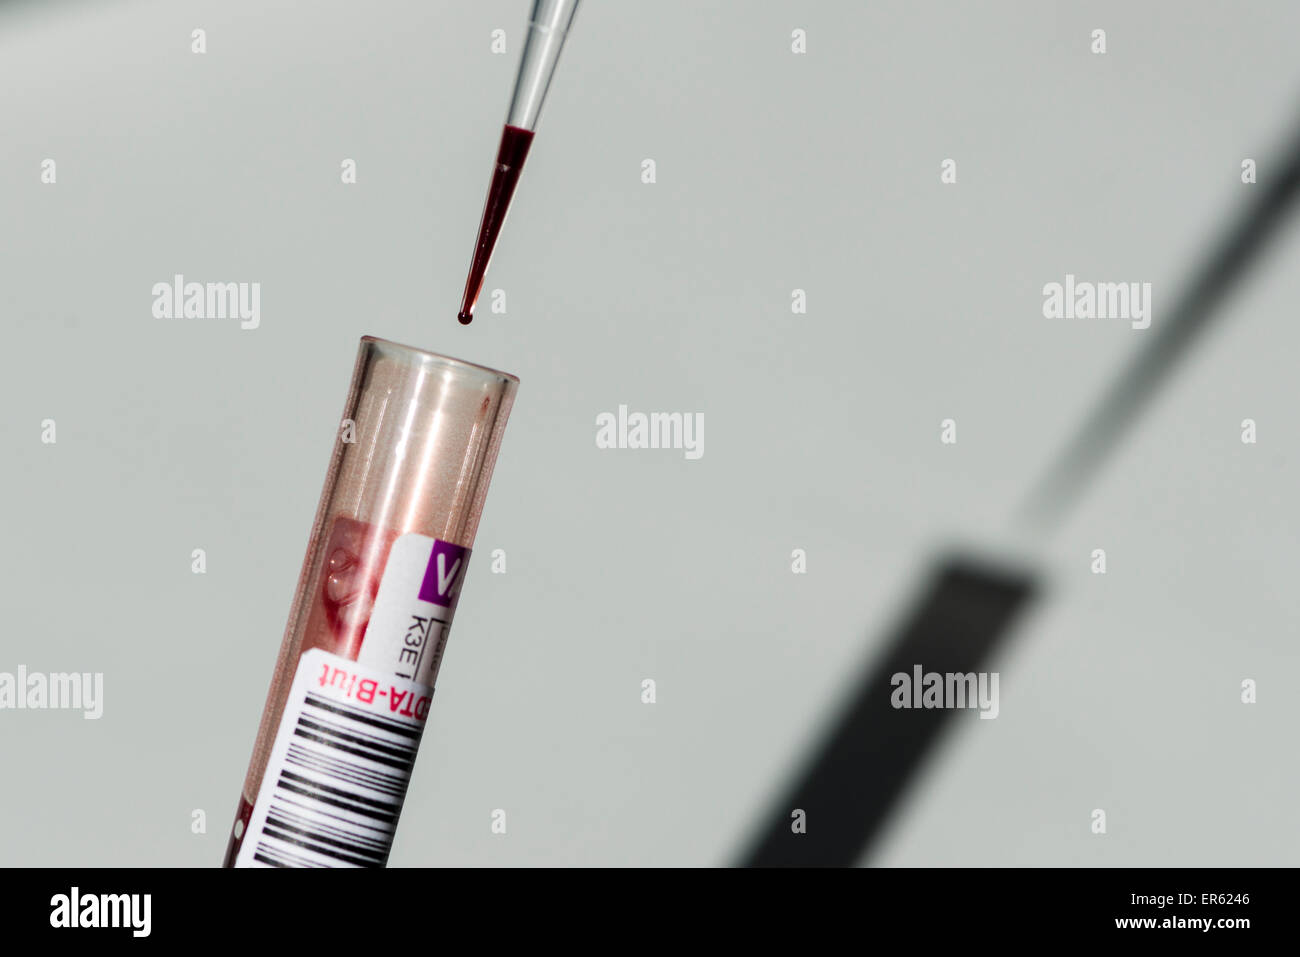 La sangre es extraída de un tubo capilar con una pipeta, Chemnitz, en Sajonia, Alemania Foto de stock